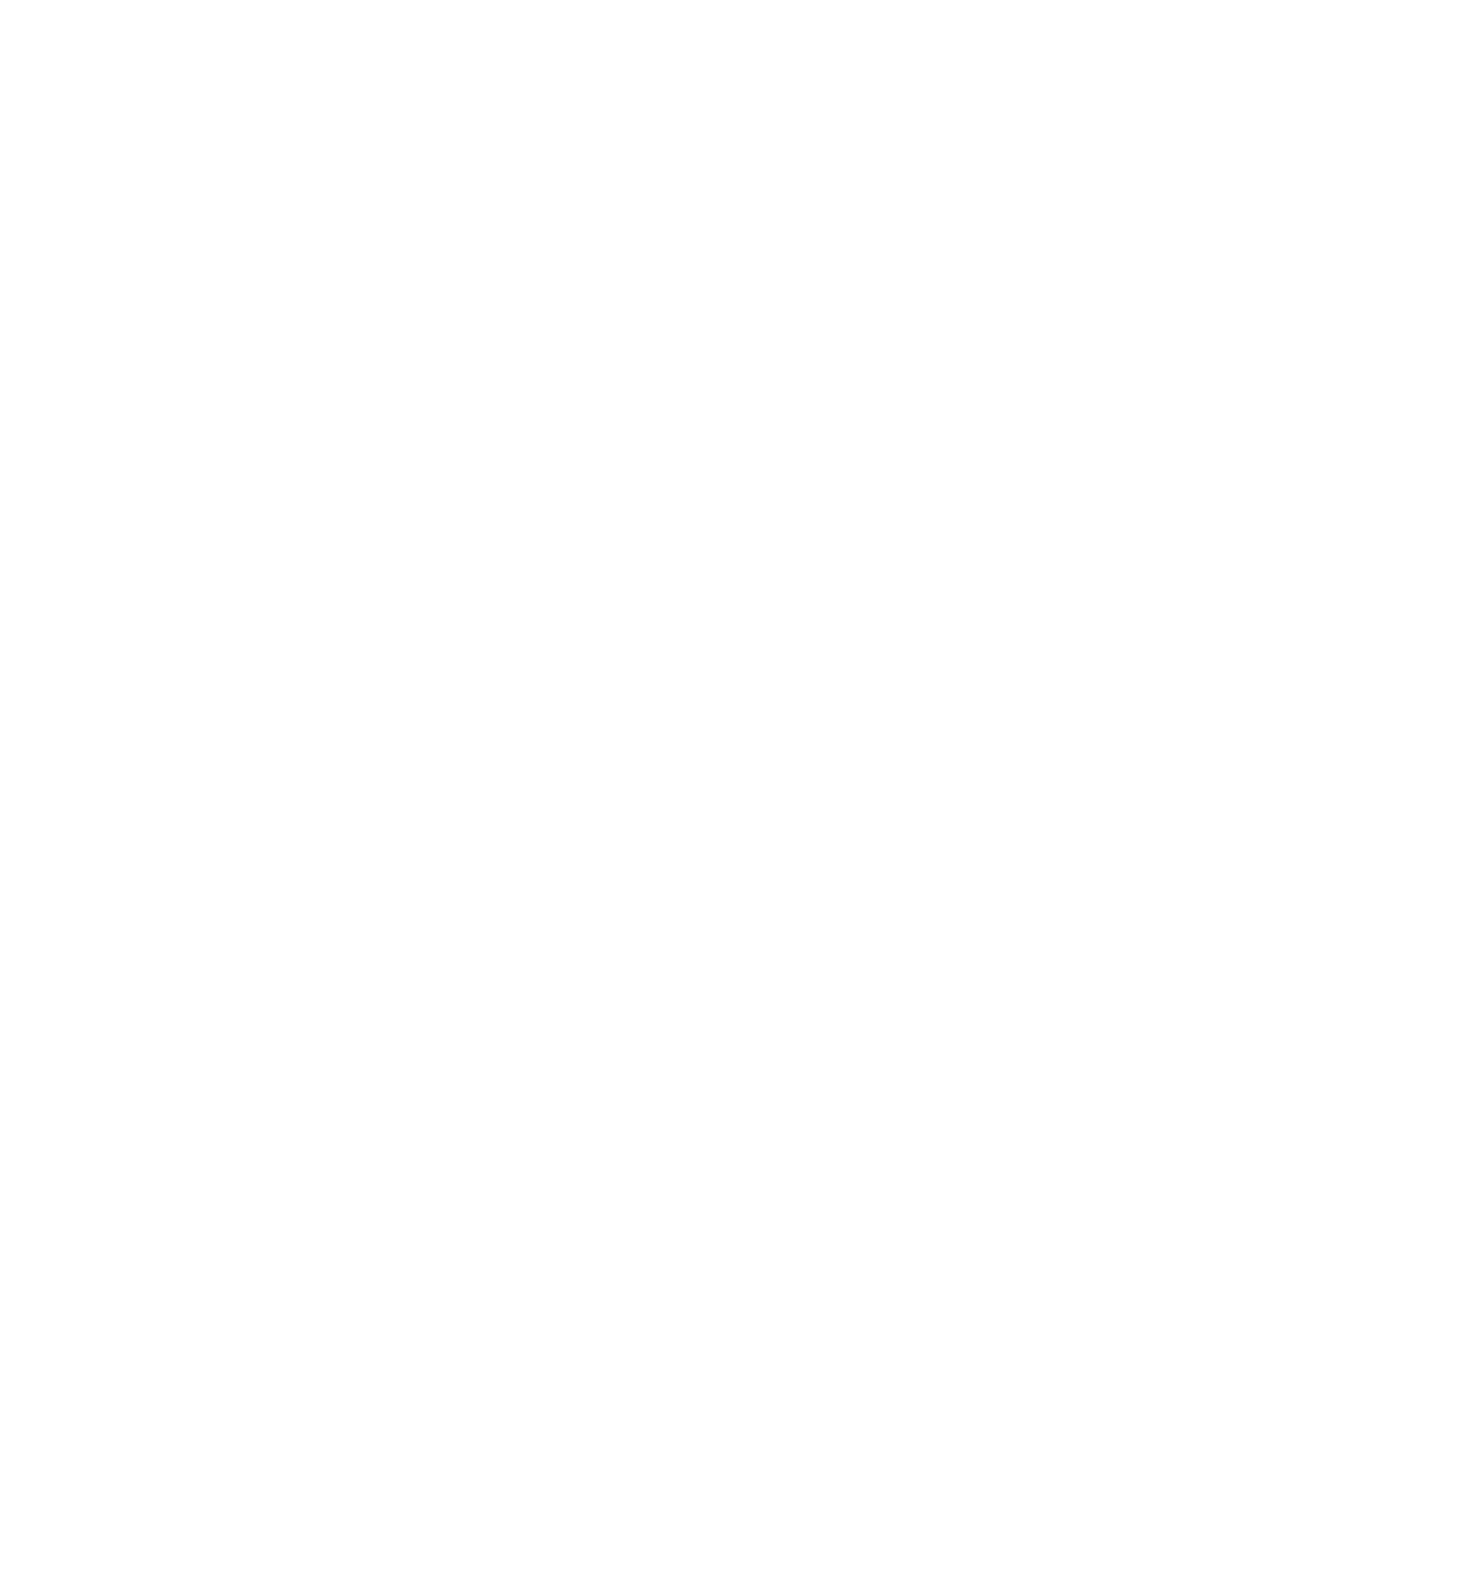 Grindr logo for dark backgrounds (transparent PNG)